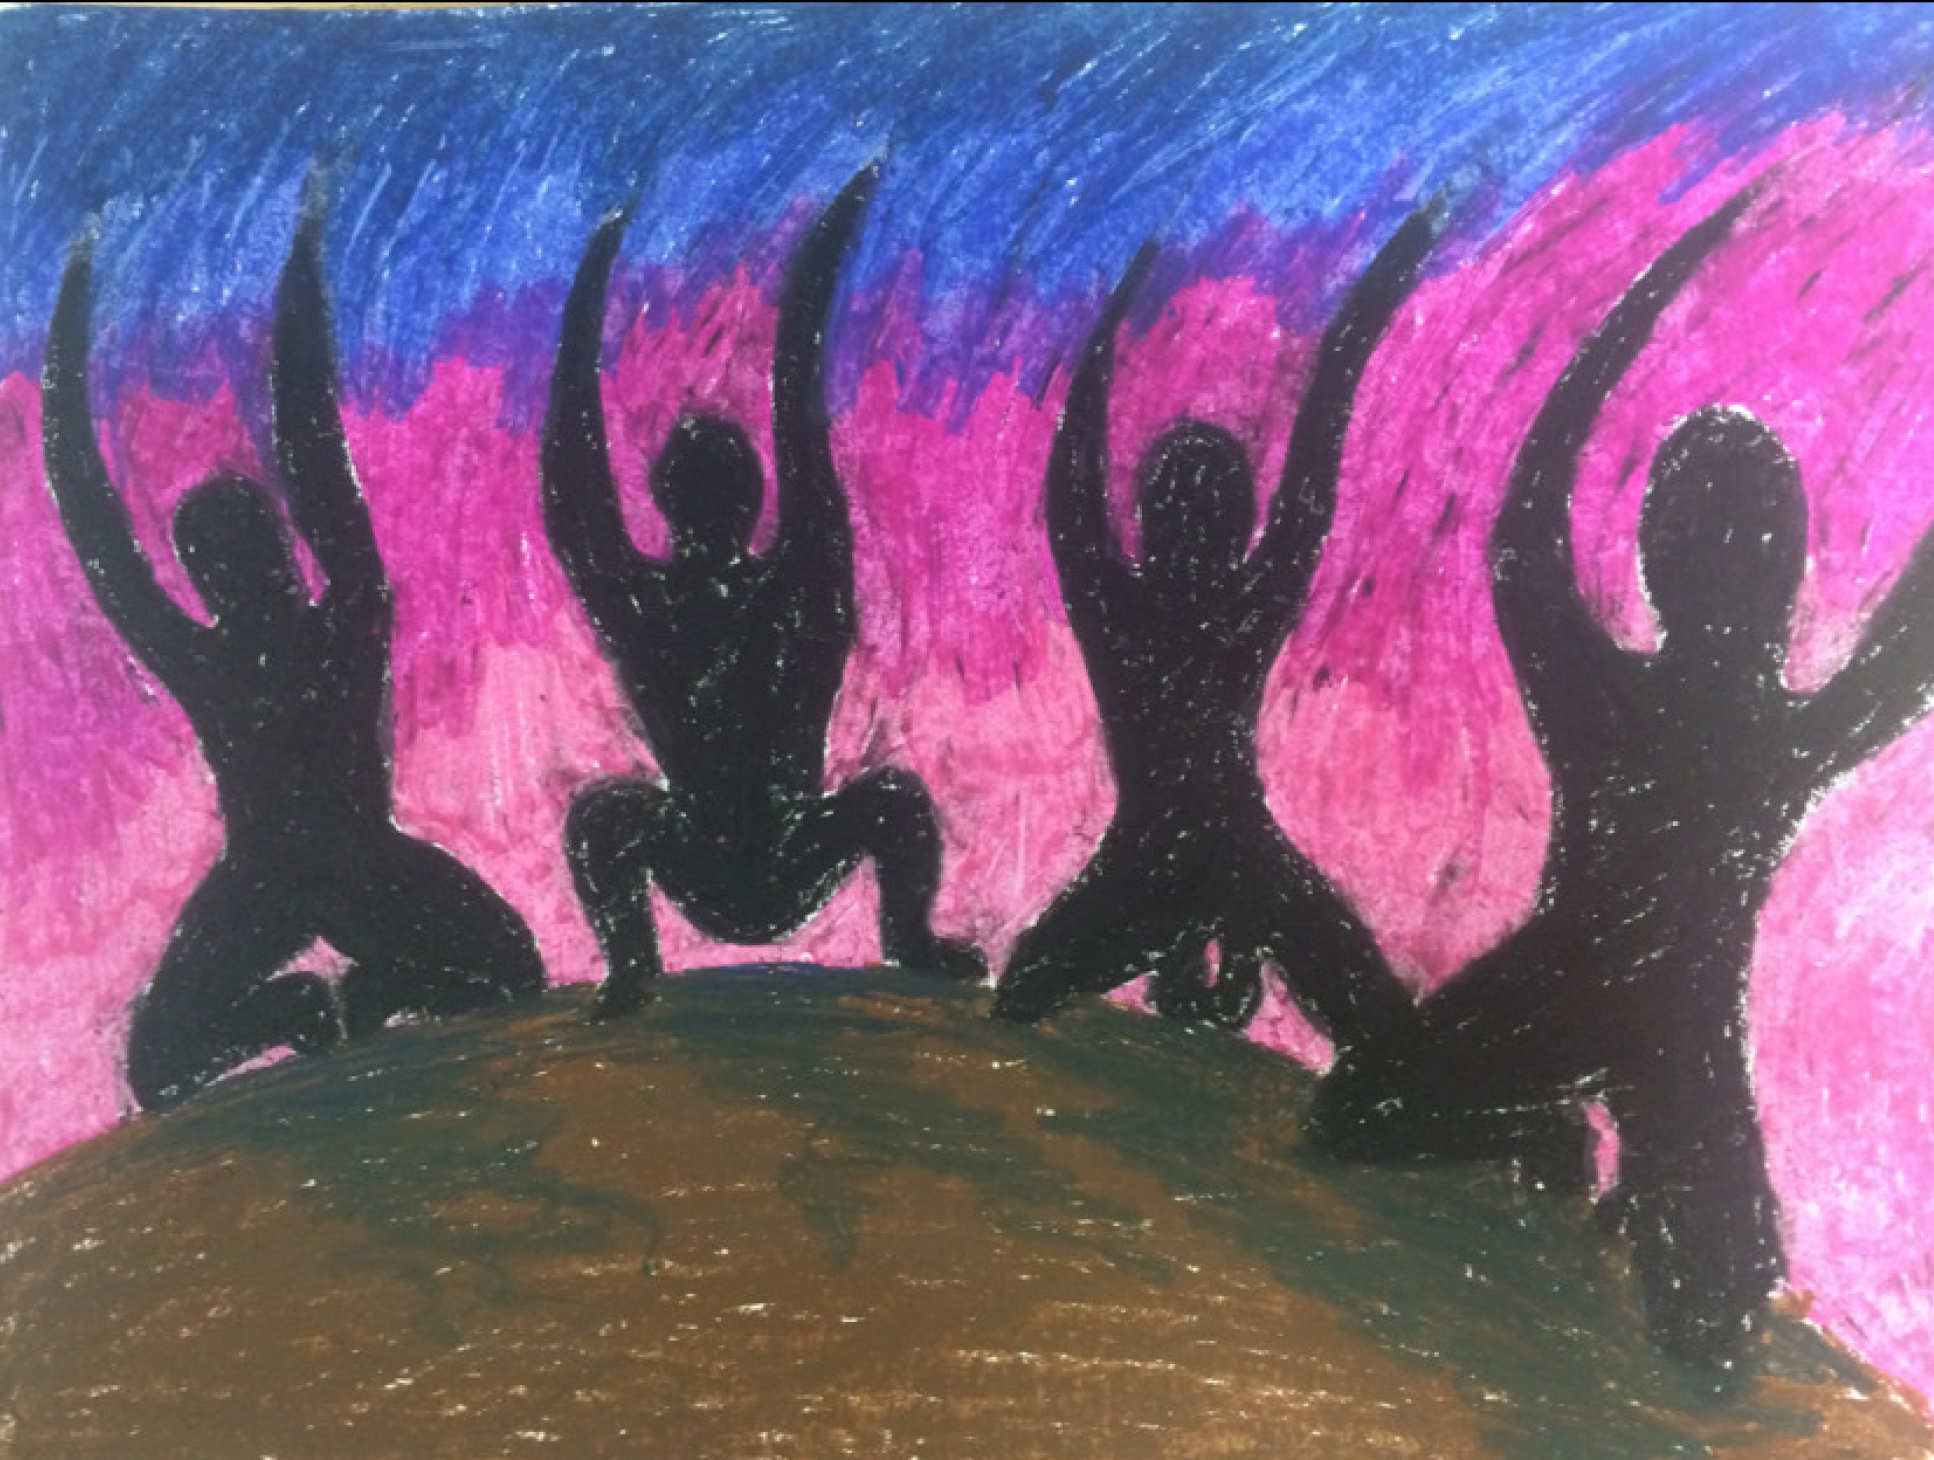 Ilustración de uno de los participantes del estudio que captura algunas de las visiones durante su experiencia con DMT: muestra cuatro sombras arrodilladas en un montículo de tierra agitando los brazos contra un fondo colorido. ICL.